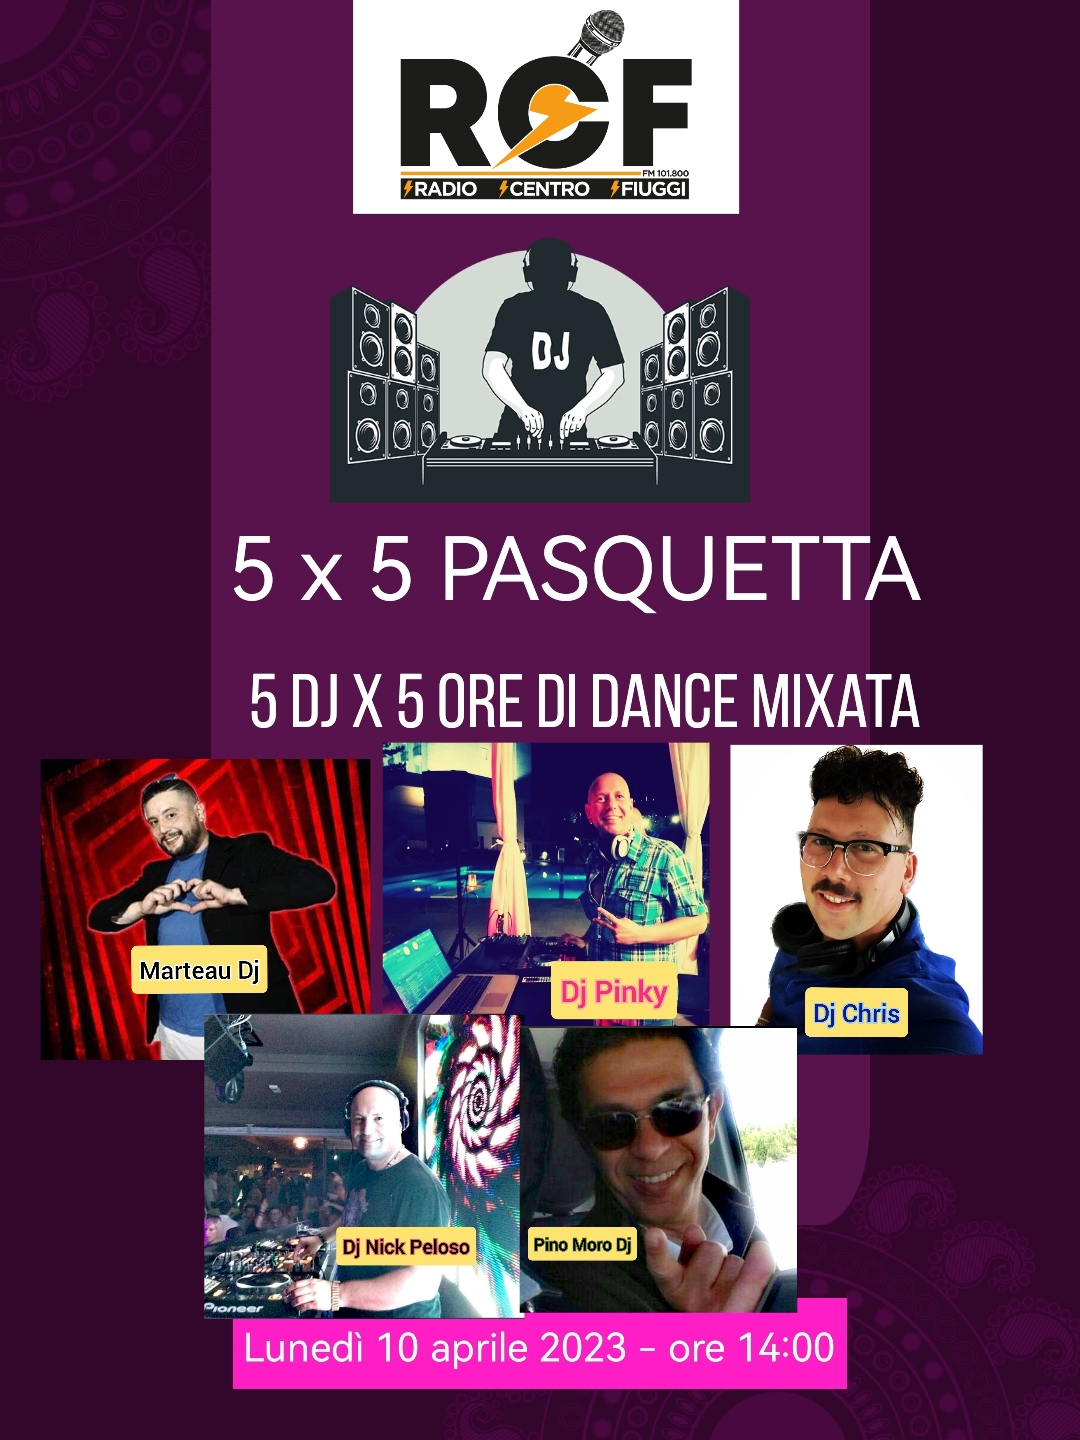 5 X 5 PASQUETTA    5 Dj per 5 ore di musica Dance mixata in radio.